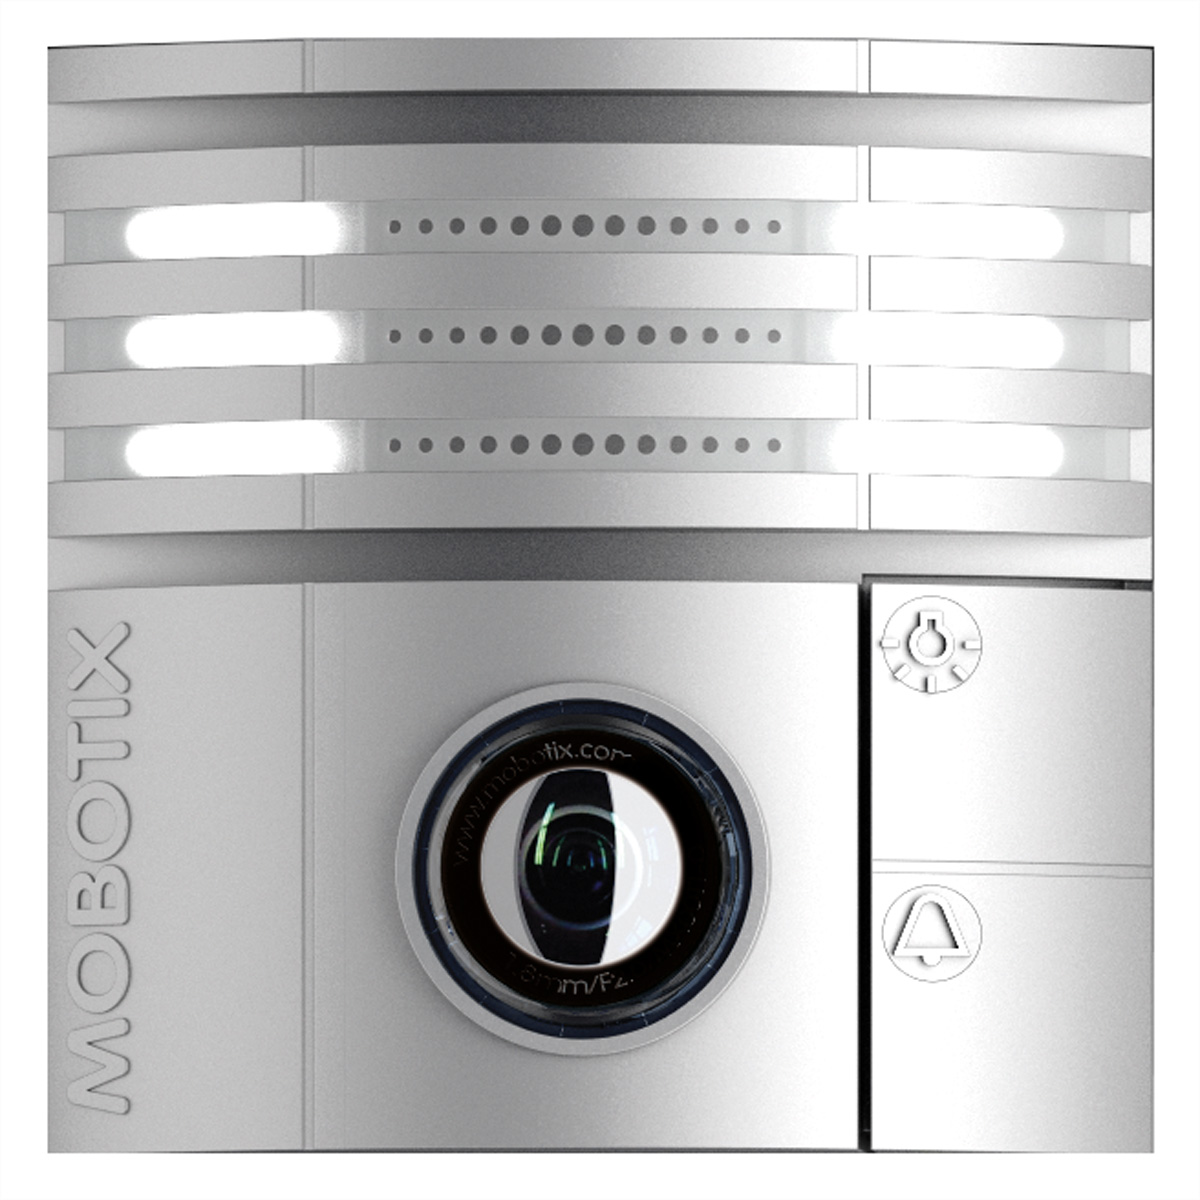 MOBOTIX T26-Kameramodul 6MP mit B016 Objektiv (180° Nacht) silber